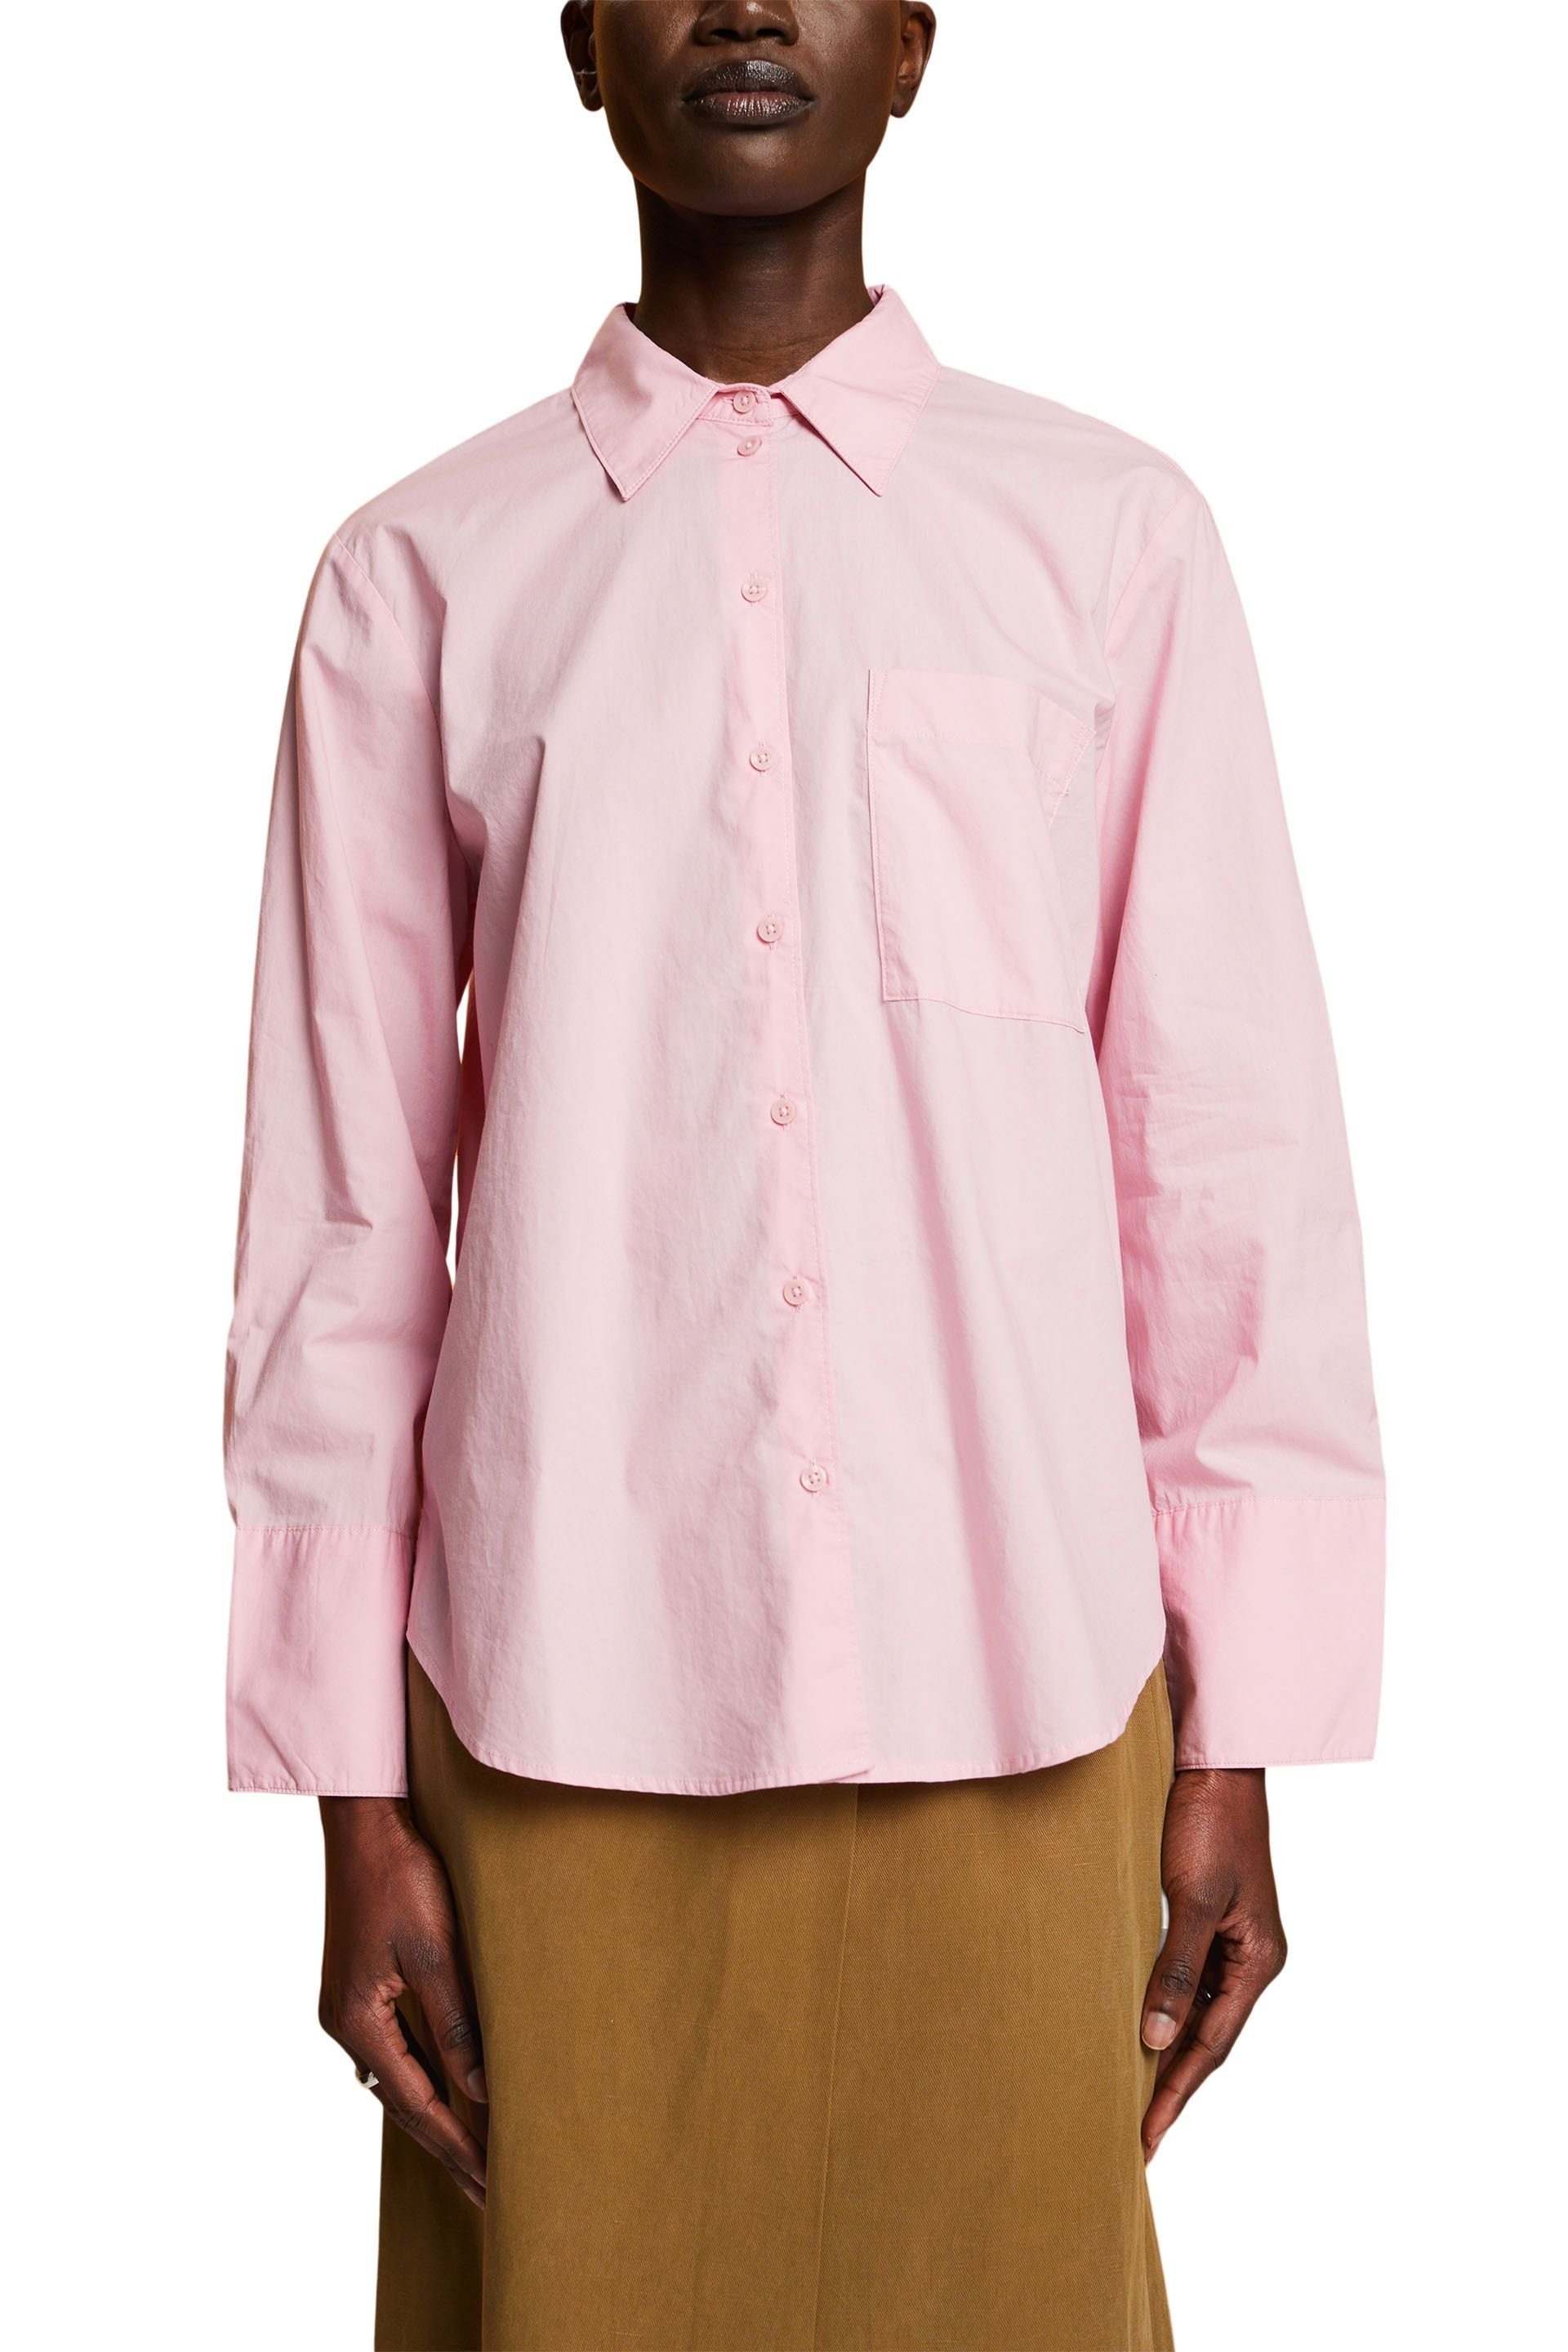 Langarmhemd light Esprit pink